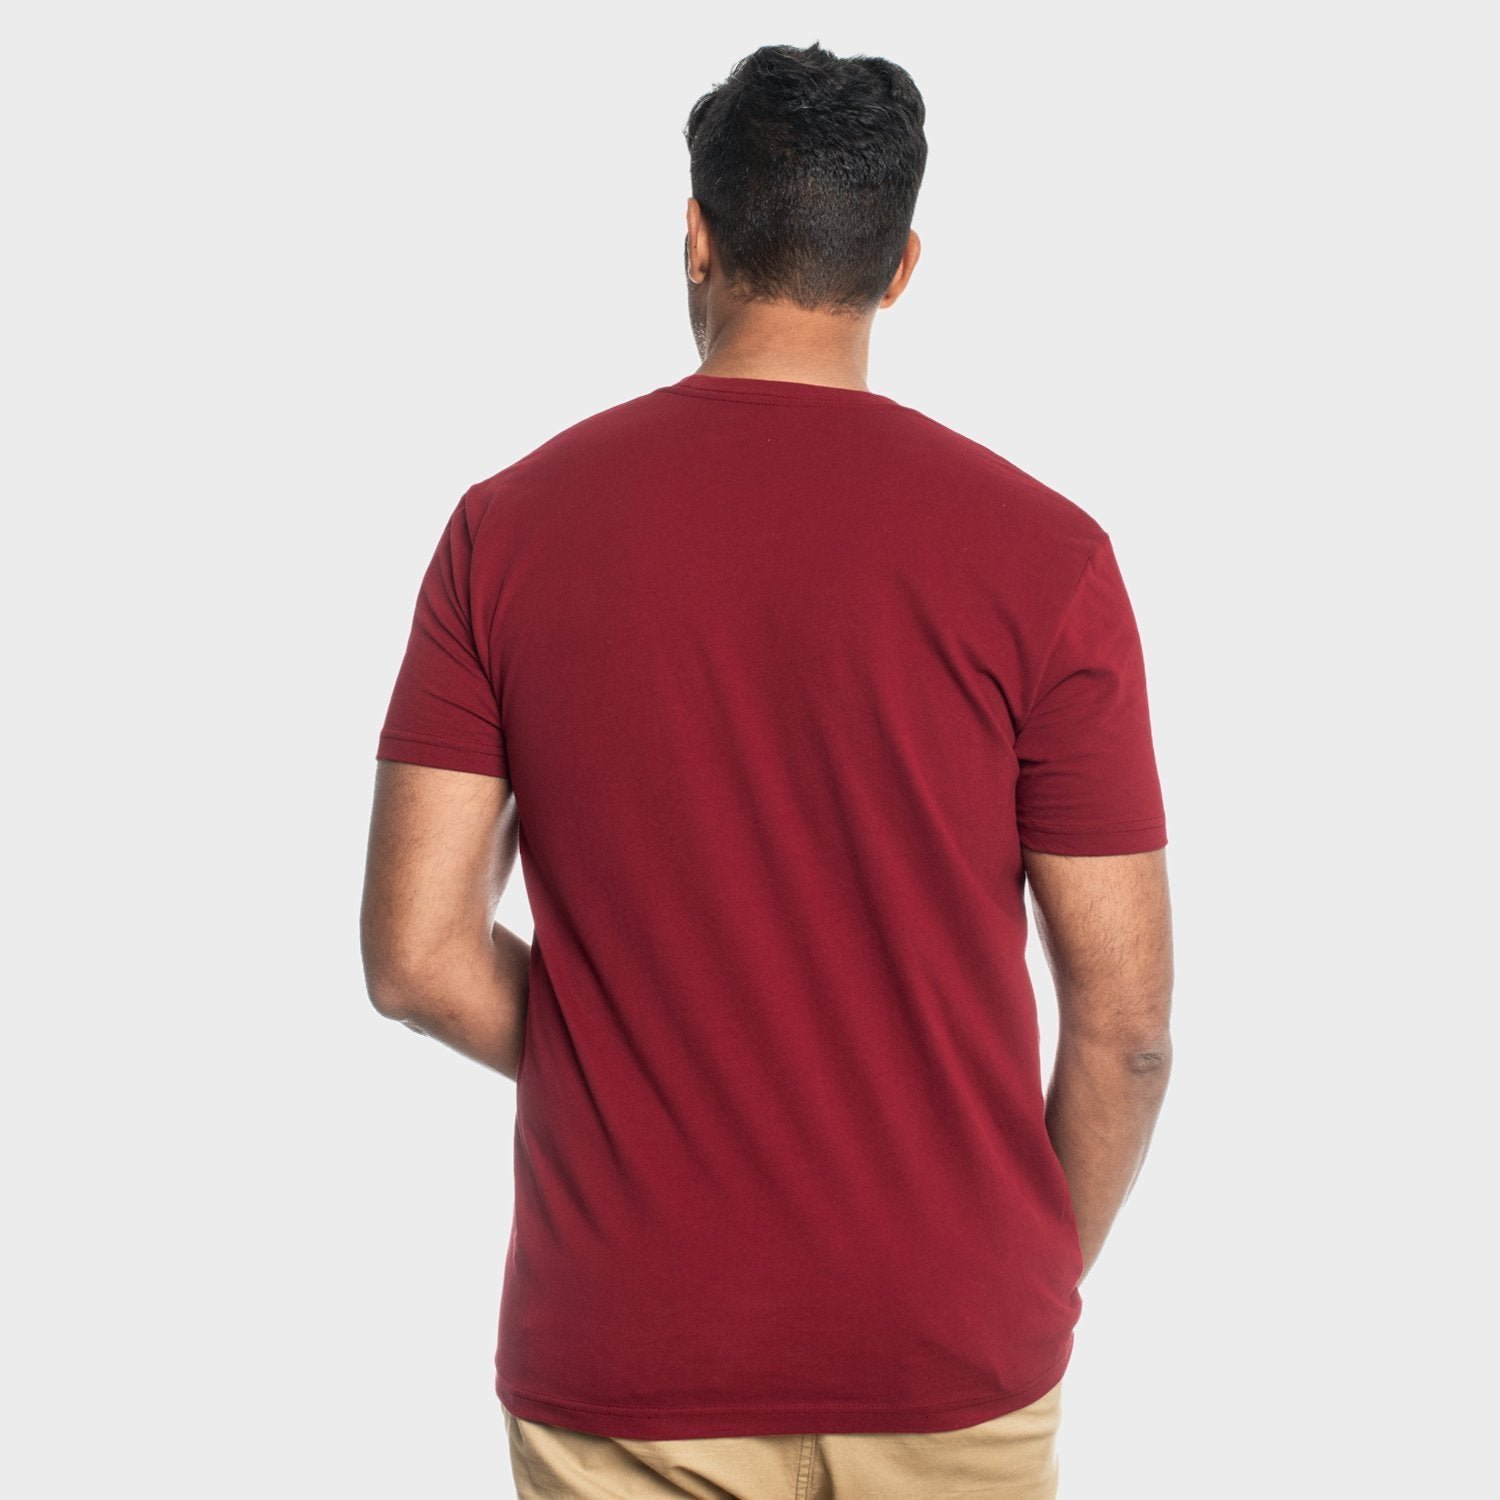 Cardinal Red Crew Neck T-Shirt